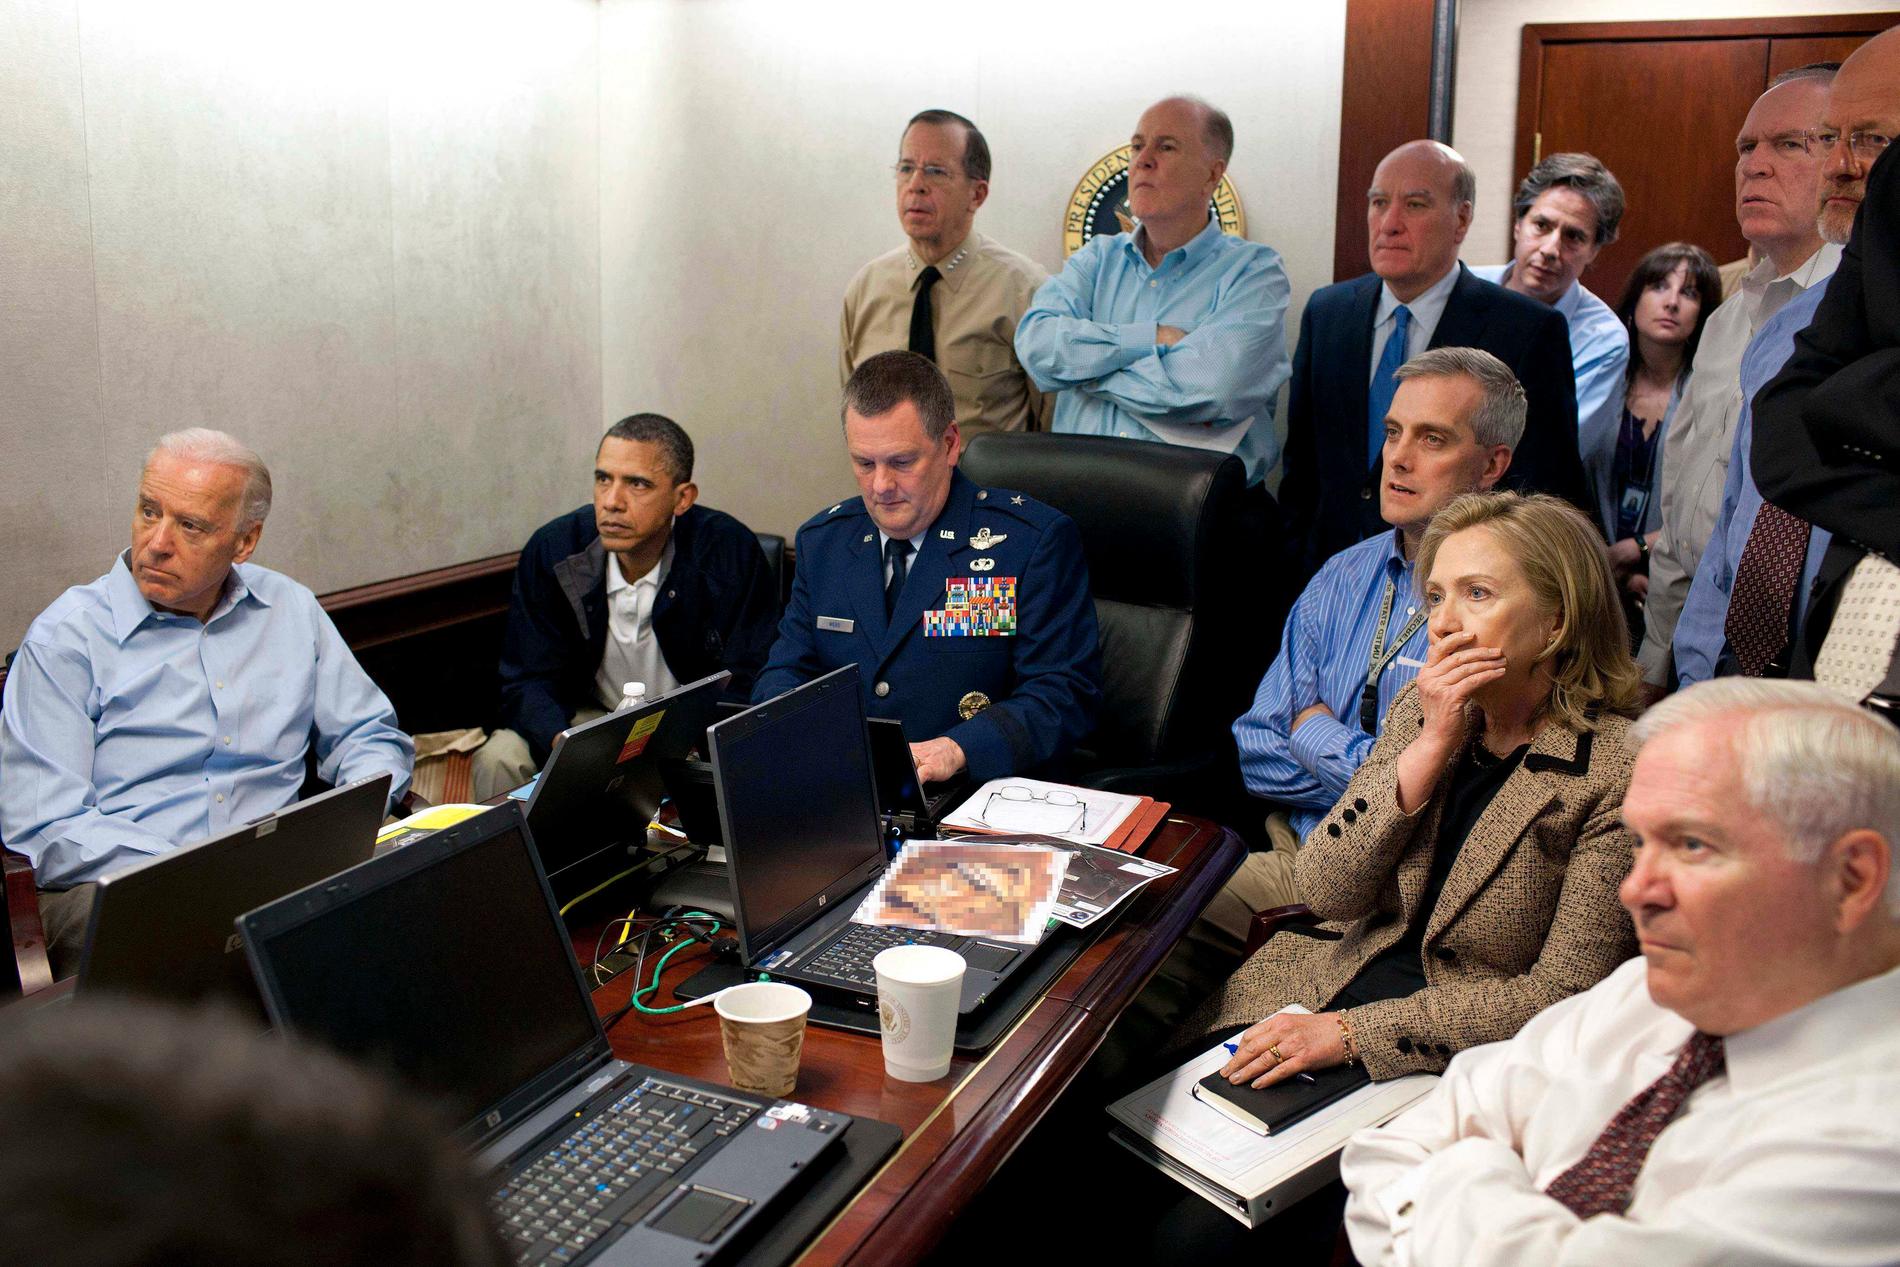 Den berömda bilden från räden mot Osama bin Liden 2011.